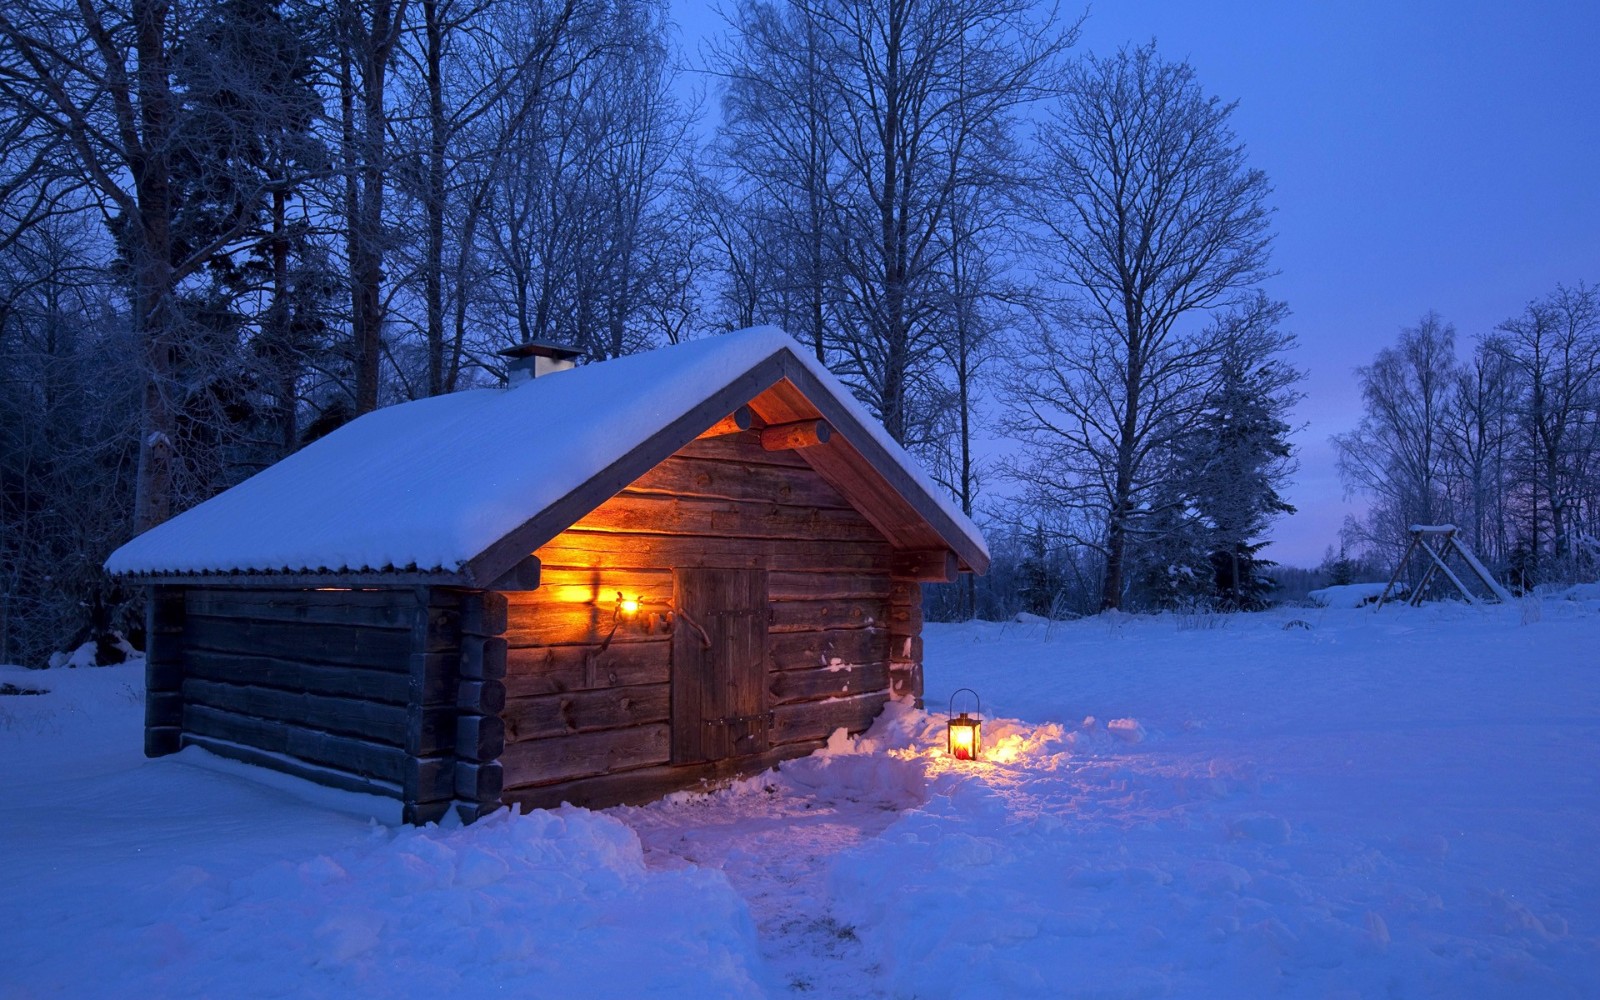 冬天晚上图片唯美图片